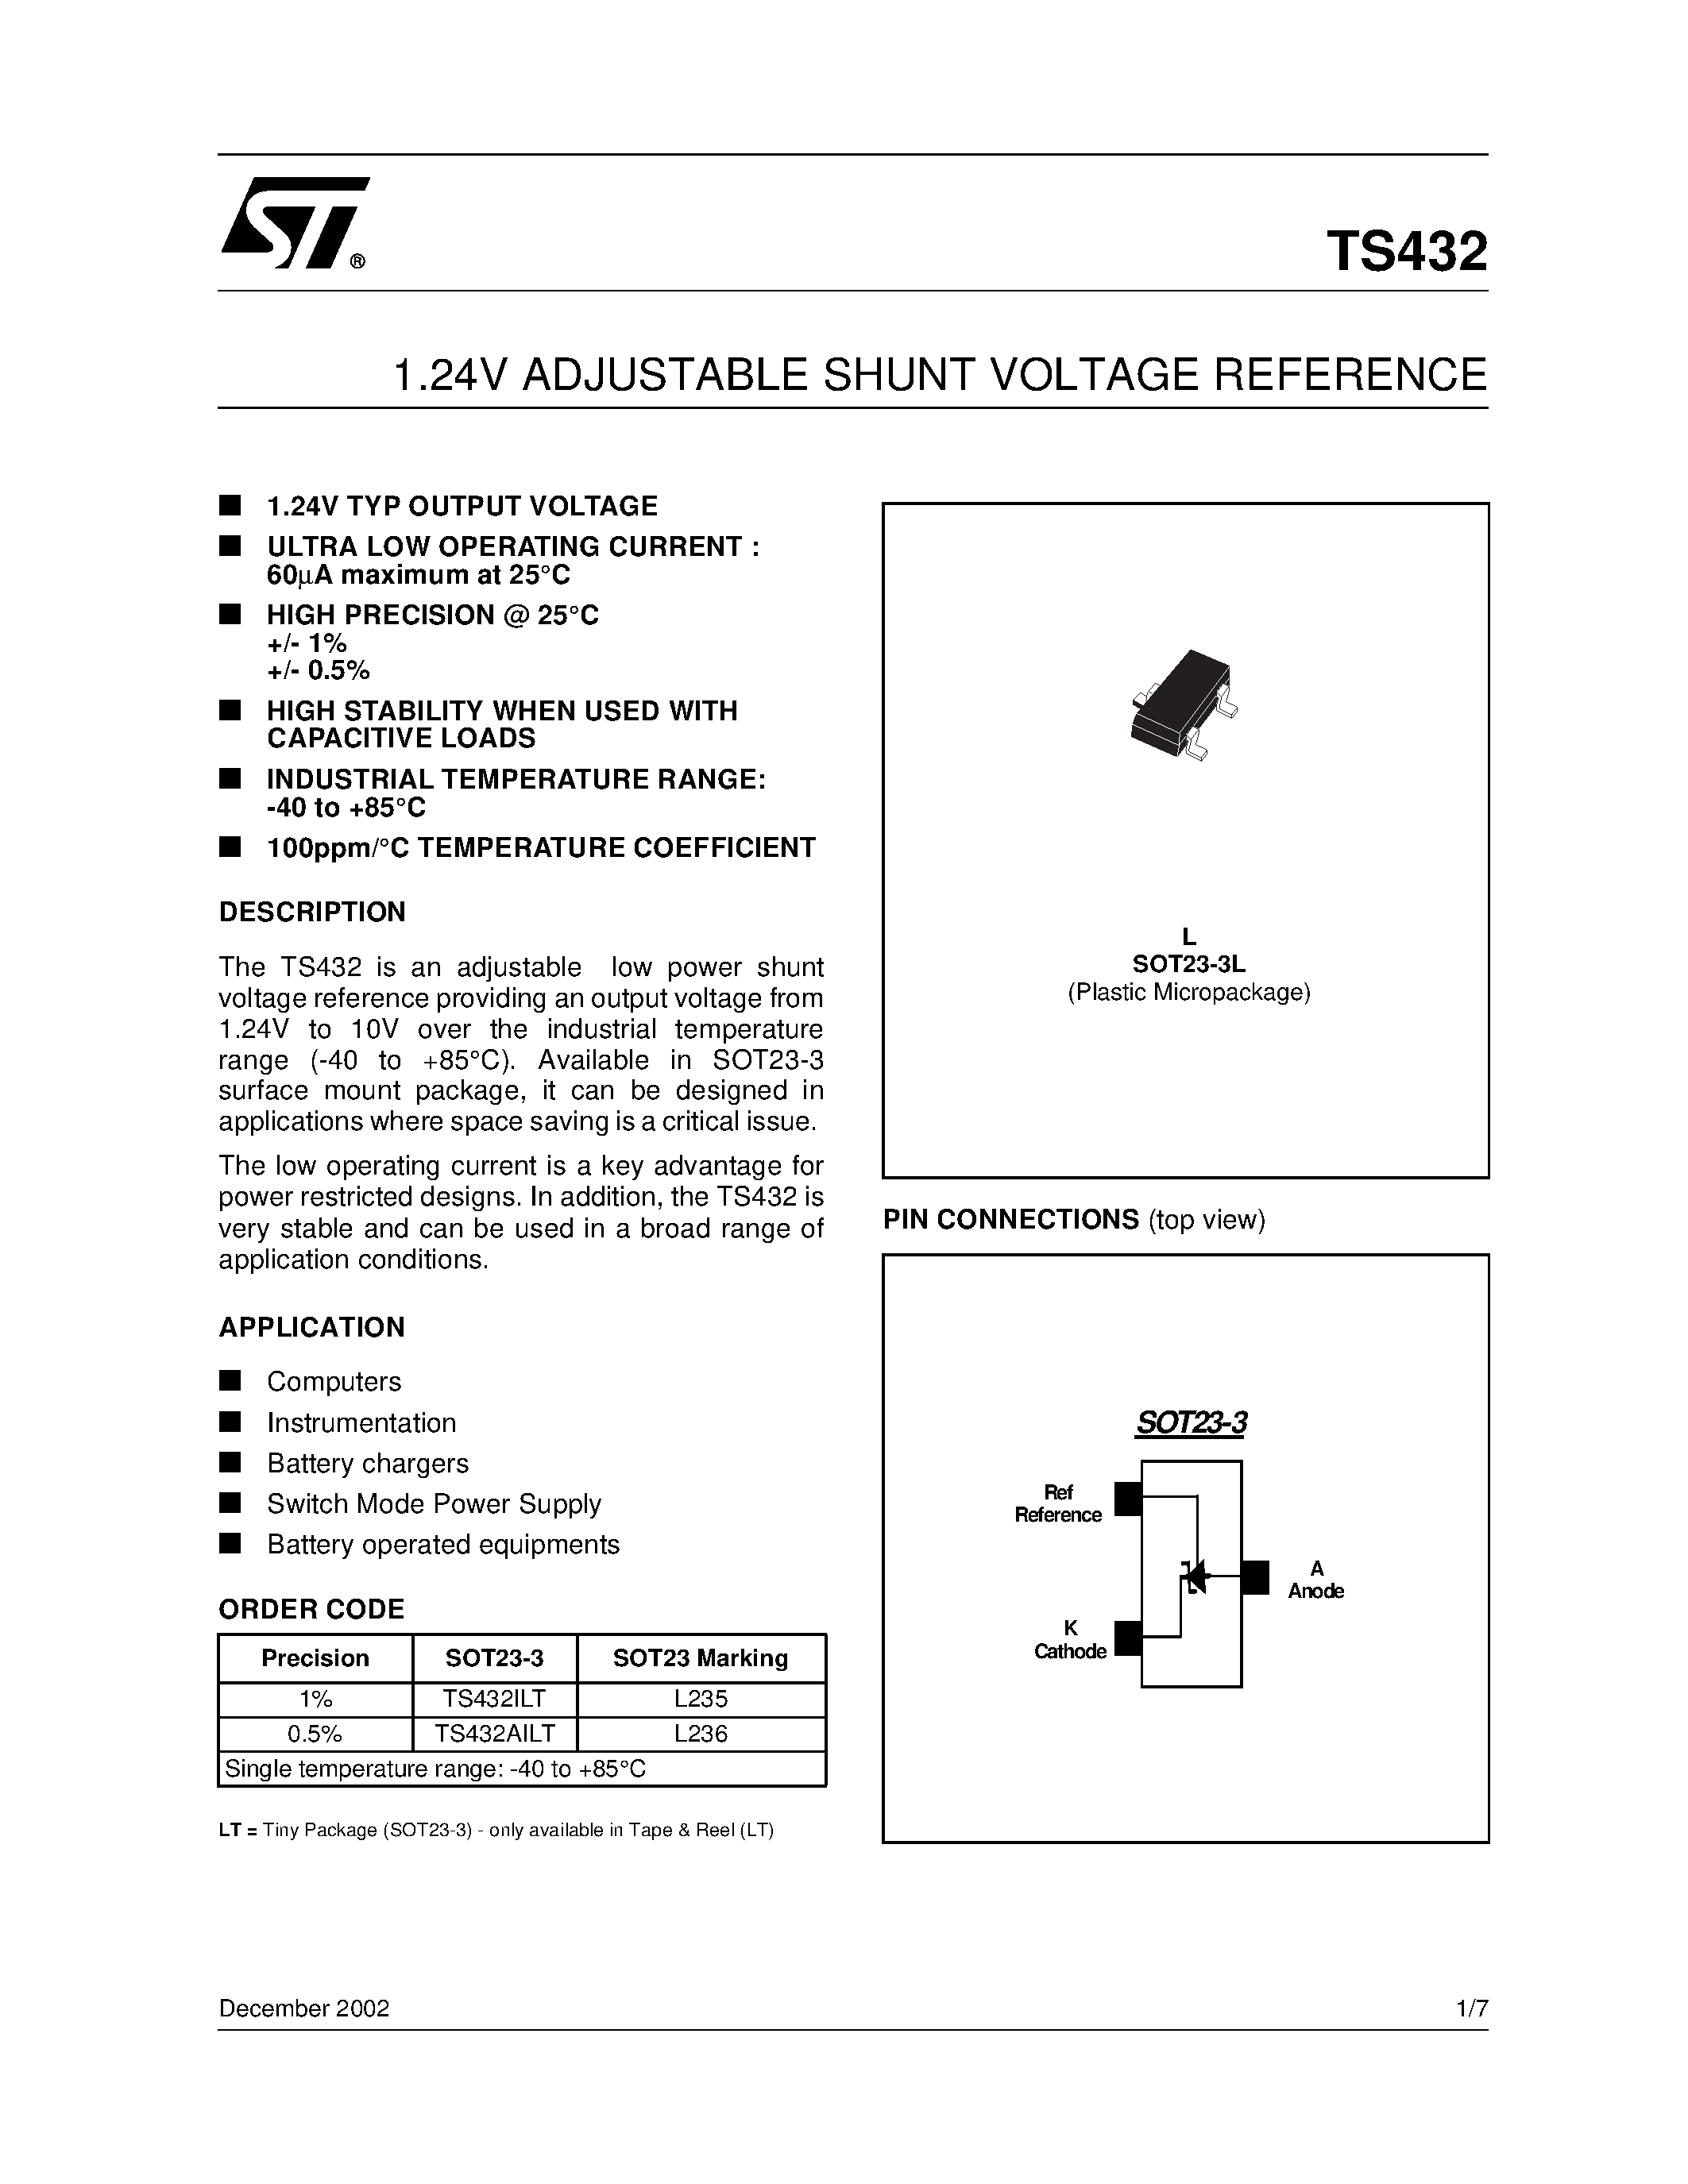 Datasheet TS432ILT - 1.24V ADJUSTABLE SHUNT VOLTAGE REFERENCE page 1